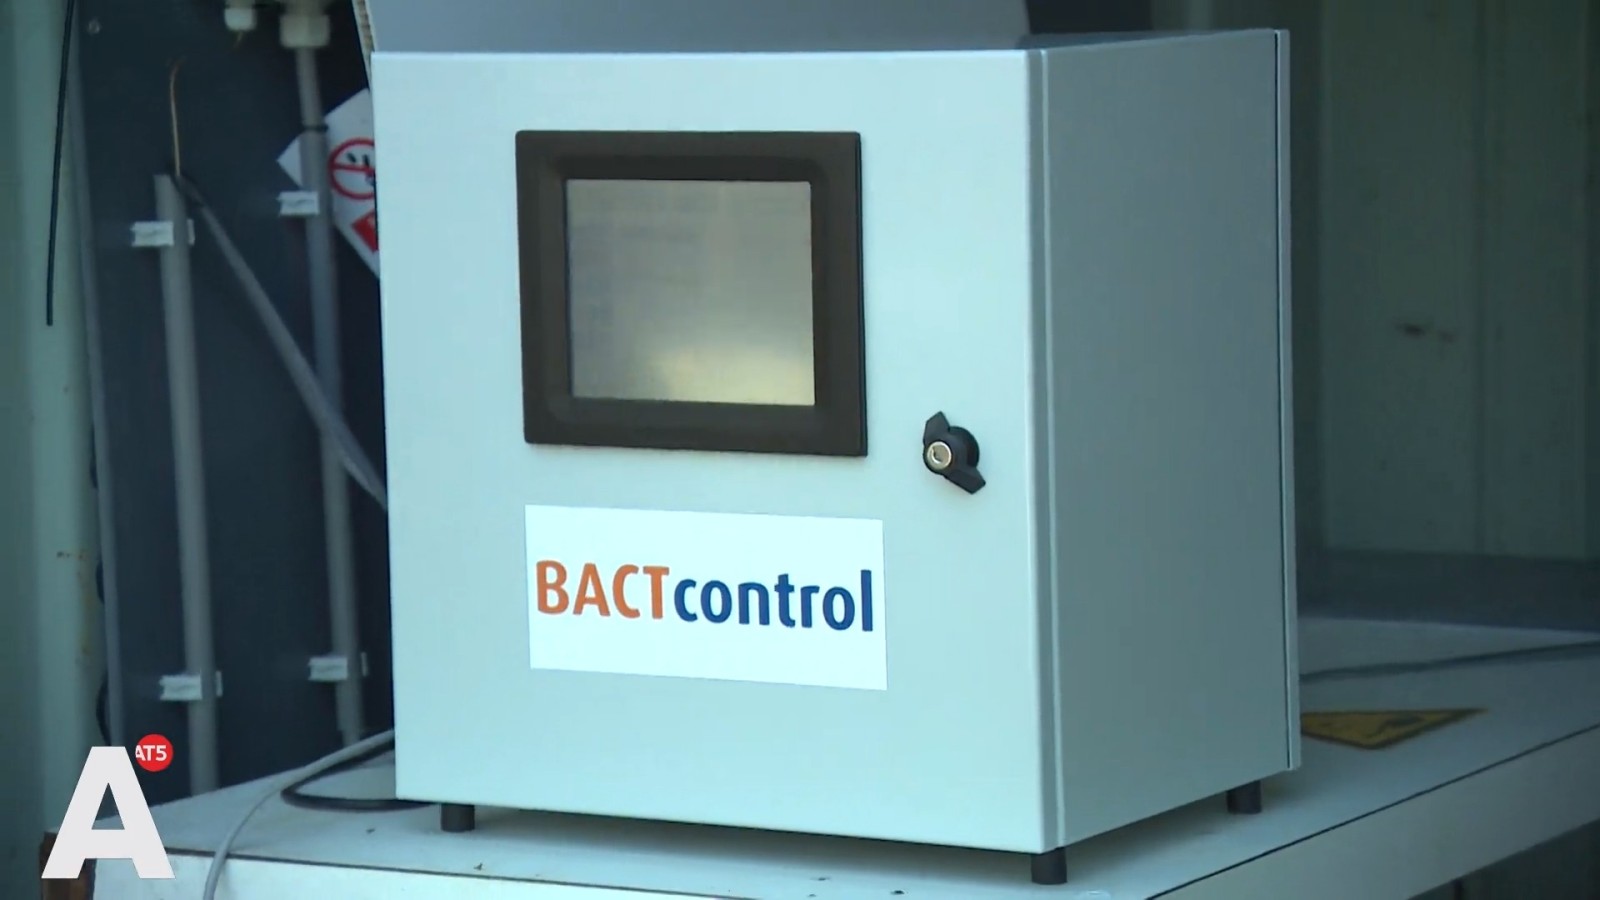 BACTcontrol apparaat